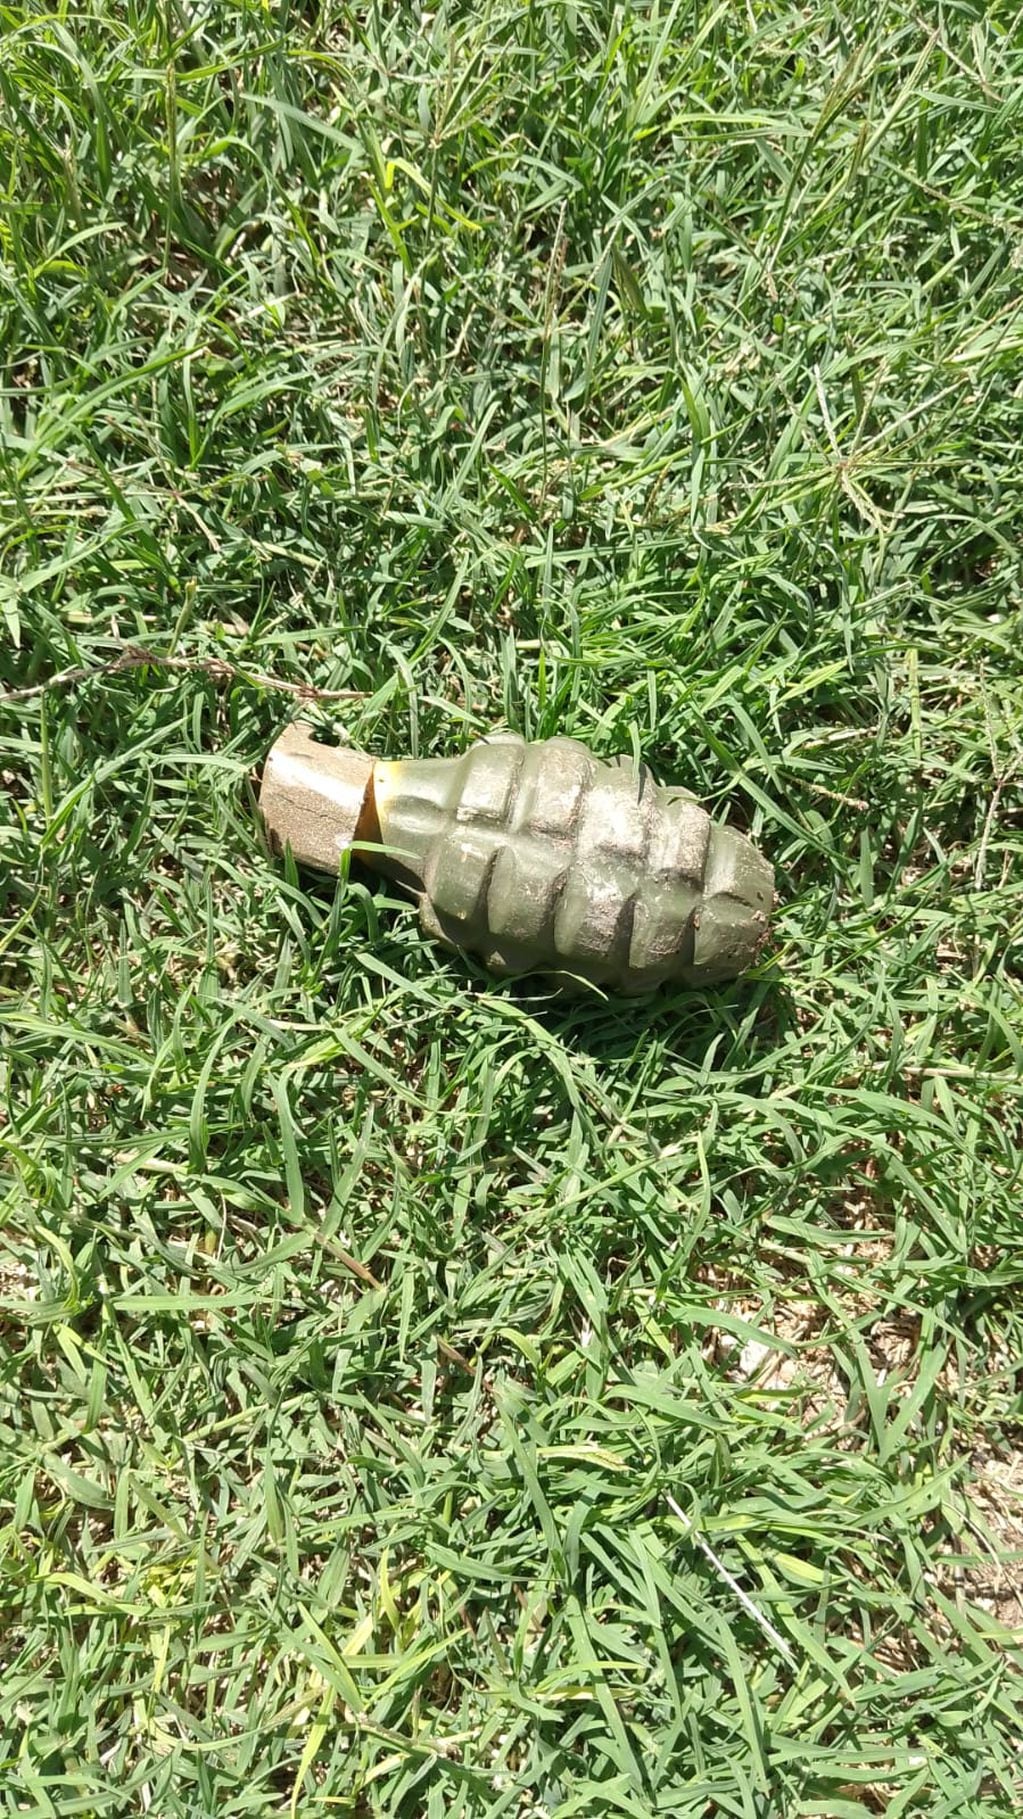 La granada encontrada en villa El Nailon y que habría sido arrojada contra uniformados. (Policía)